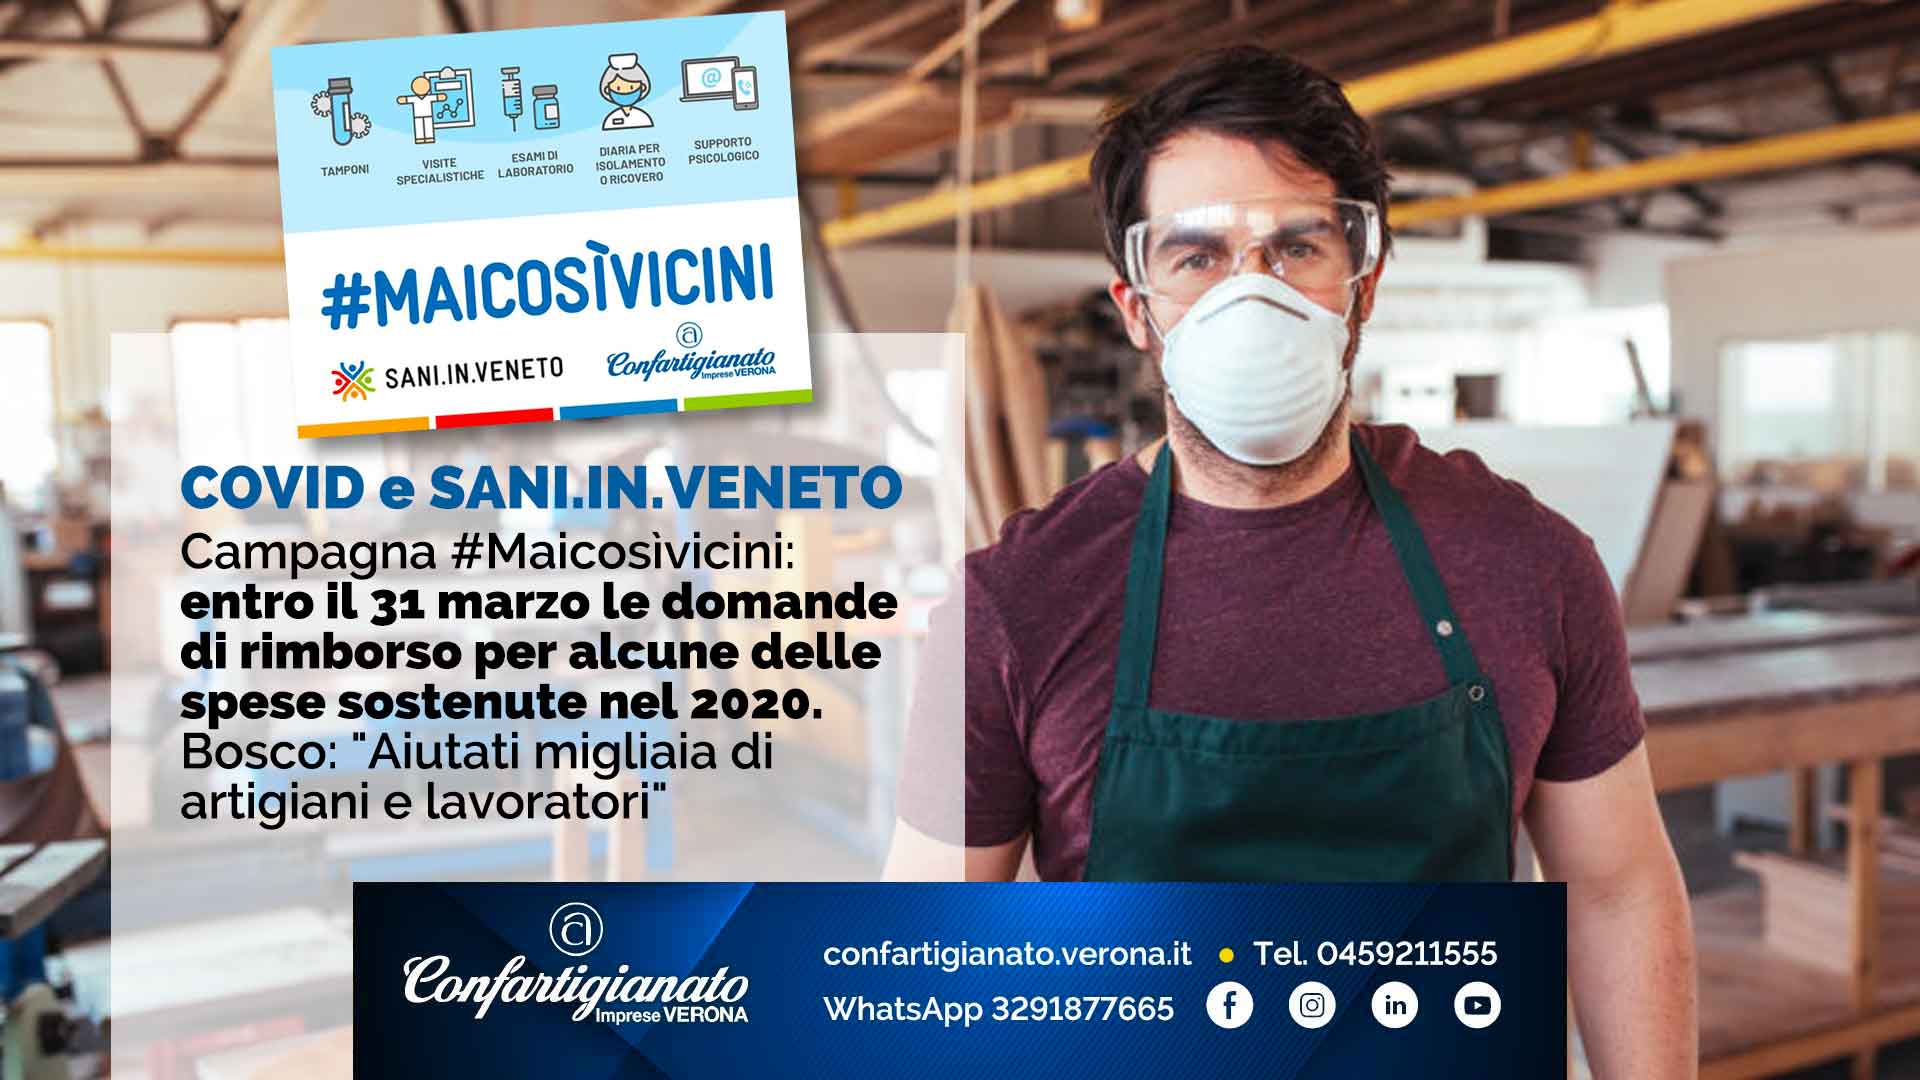 COVID e SANI.IN.VENETO – #Maicosìvicini: entro il 31 marzo le domande di rimborso per alcune spese 2020. Bosco: "Aiutati migliaia di artigiani e lavoratori"